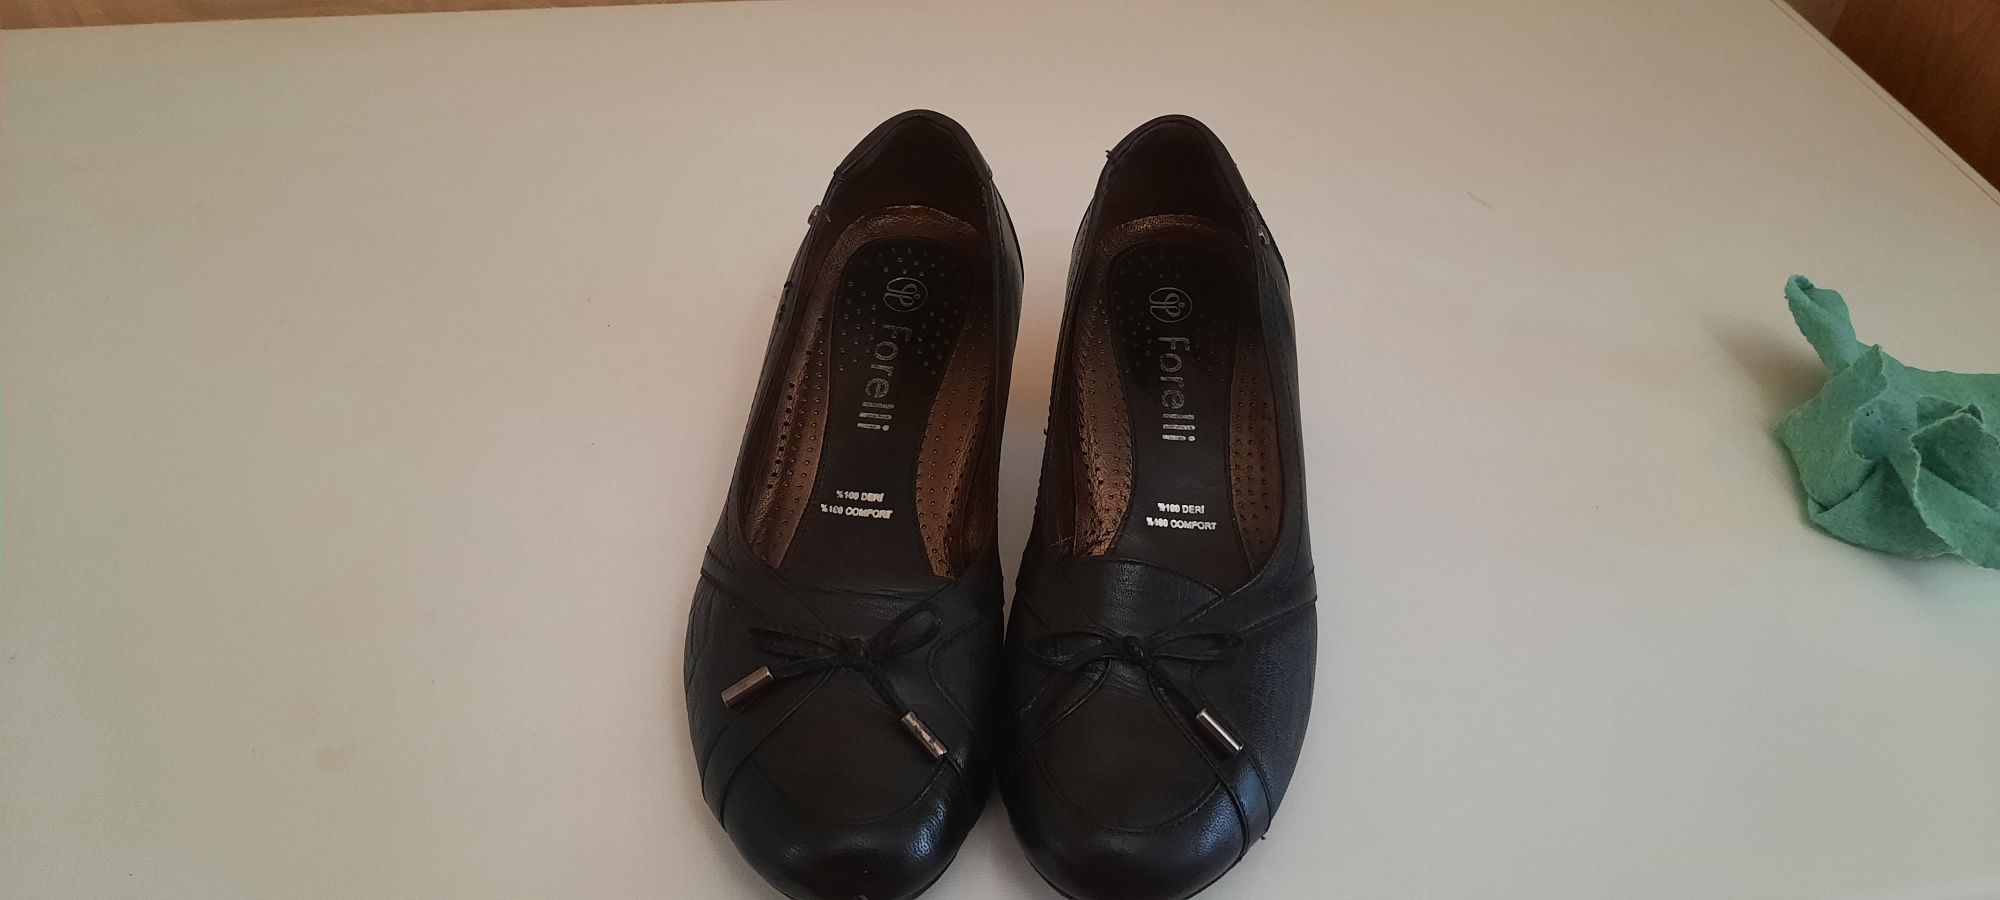 Продам кожанные туфли Турецкого бренда Форель